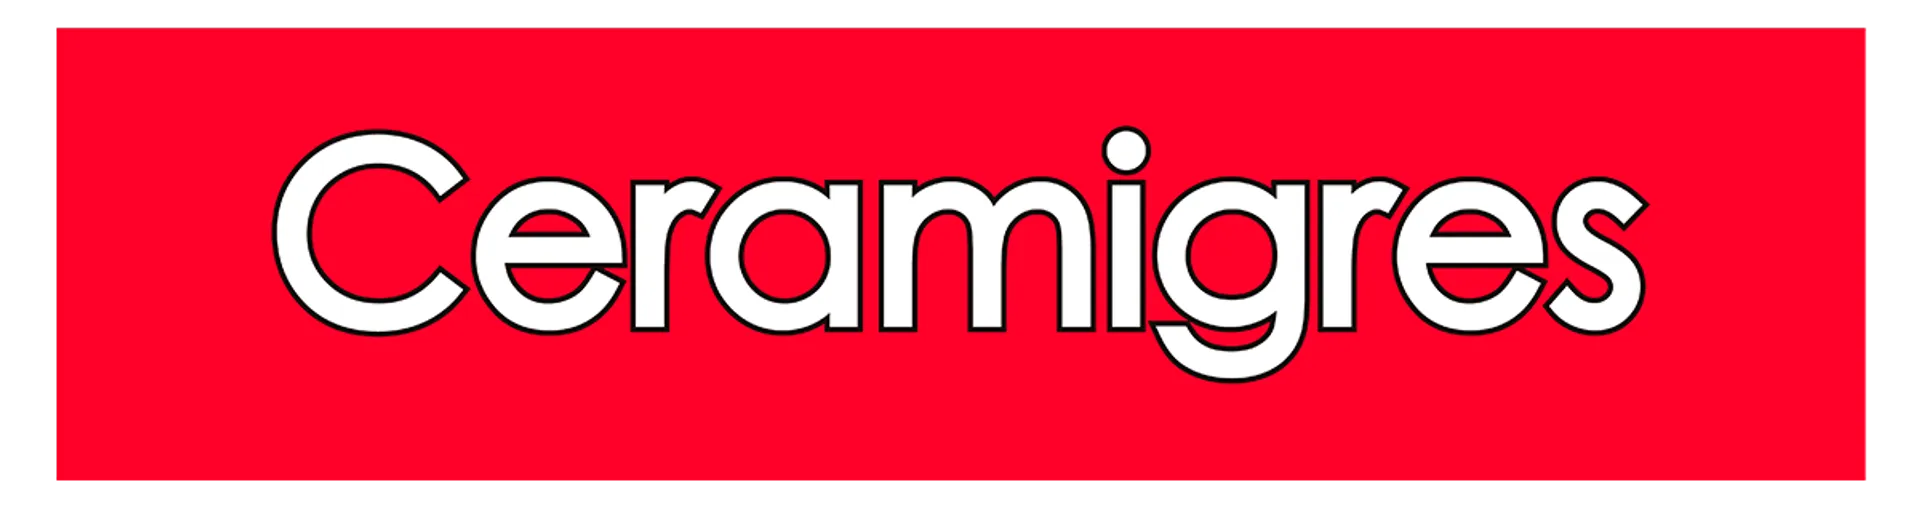 CERAMIGRES logo de catálogo